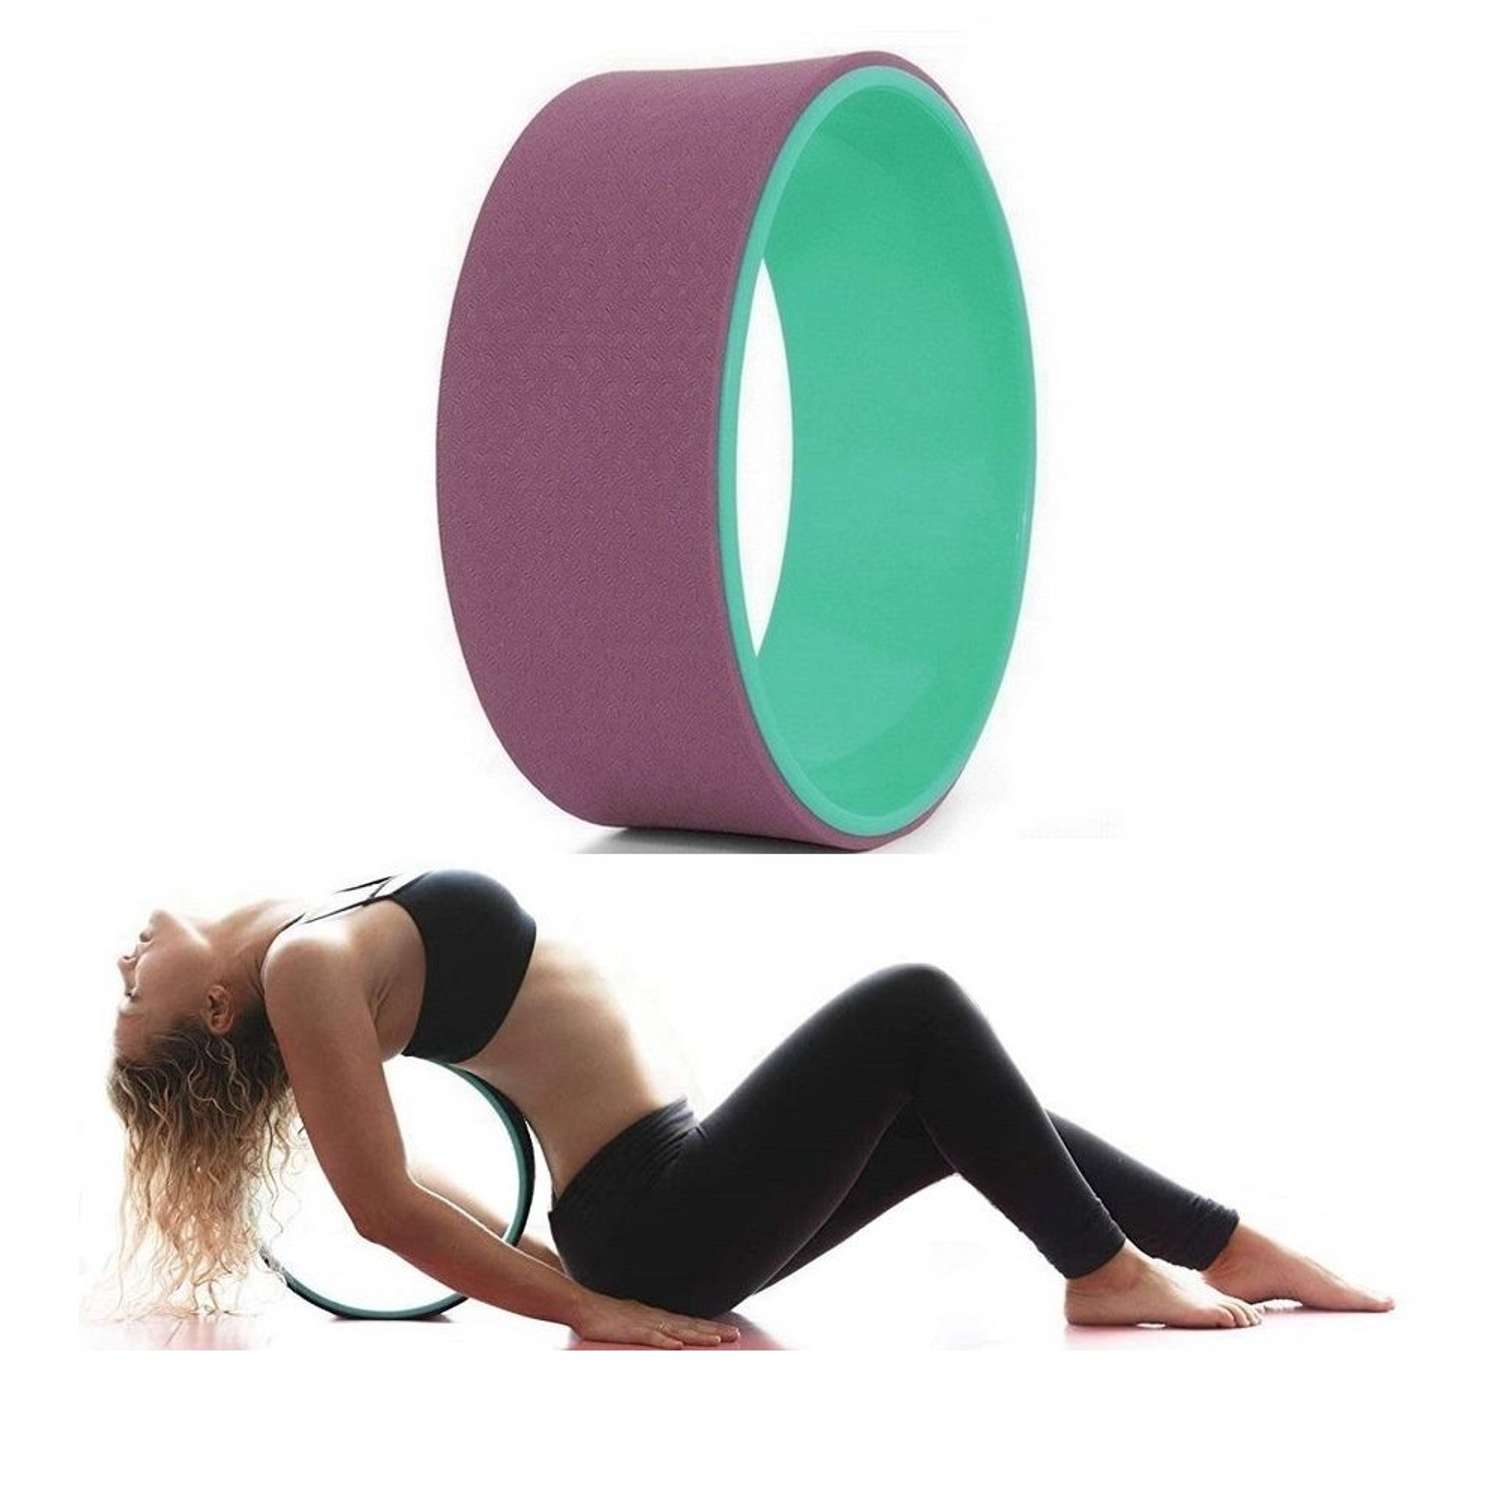 Колесо для йоги STRONG BODY фитнеса и пилатес 30 см х 12 см пурпурно-зеленое - фото 3